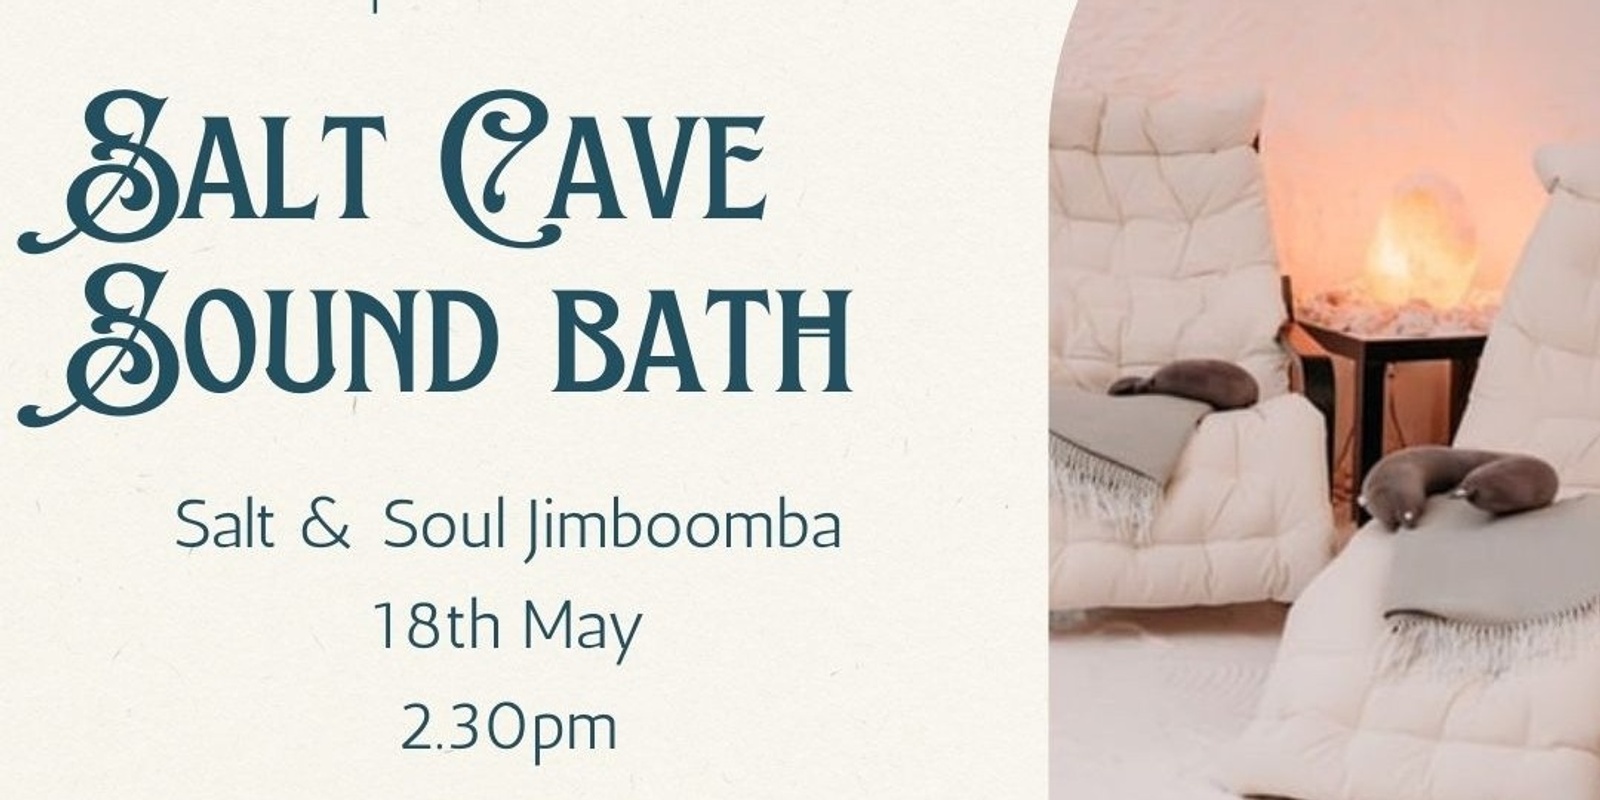 Banner image for Salt Cave Sound Bath